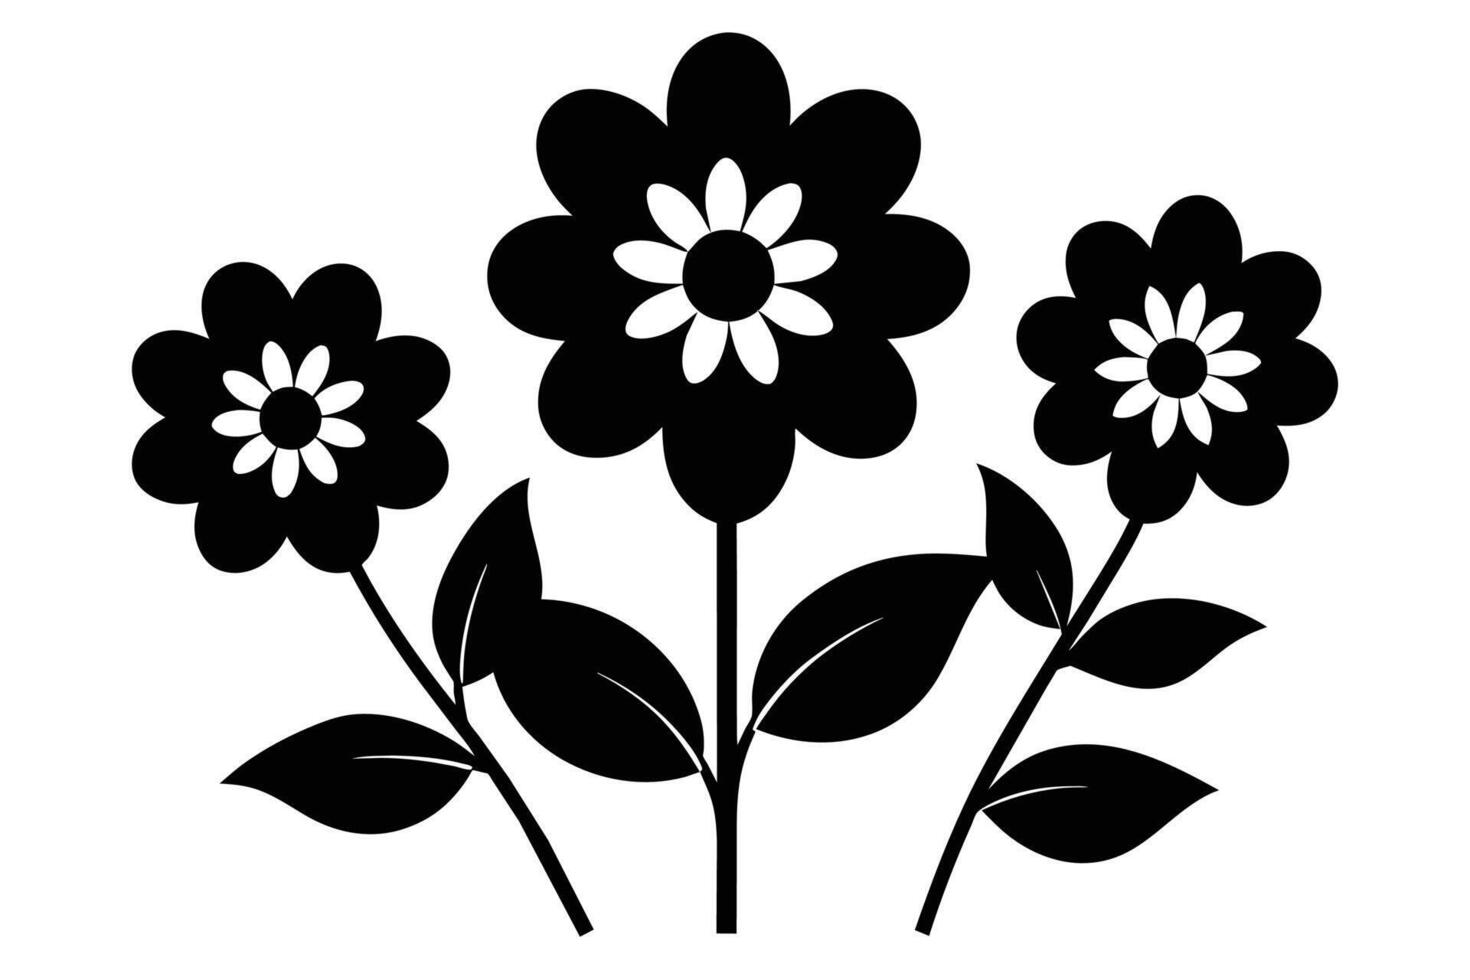 schwarz ausgeschnitten Symbole von Blumen vektor